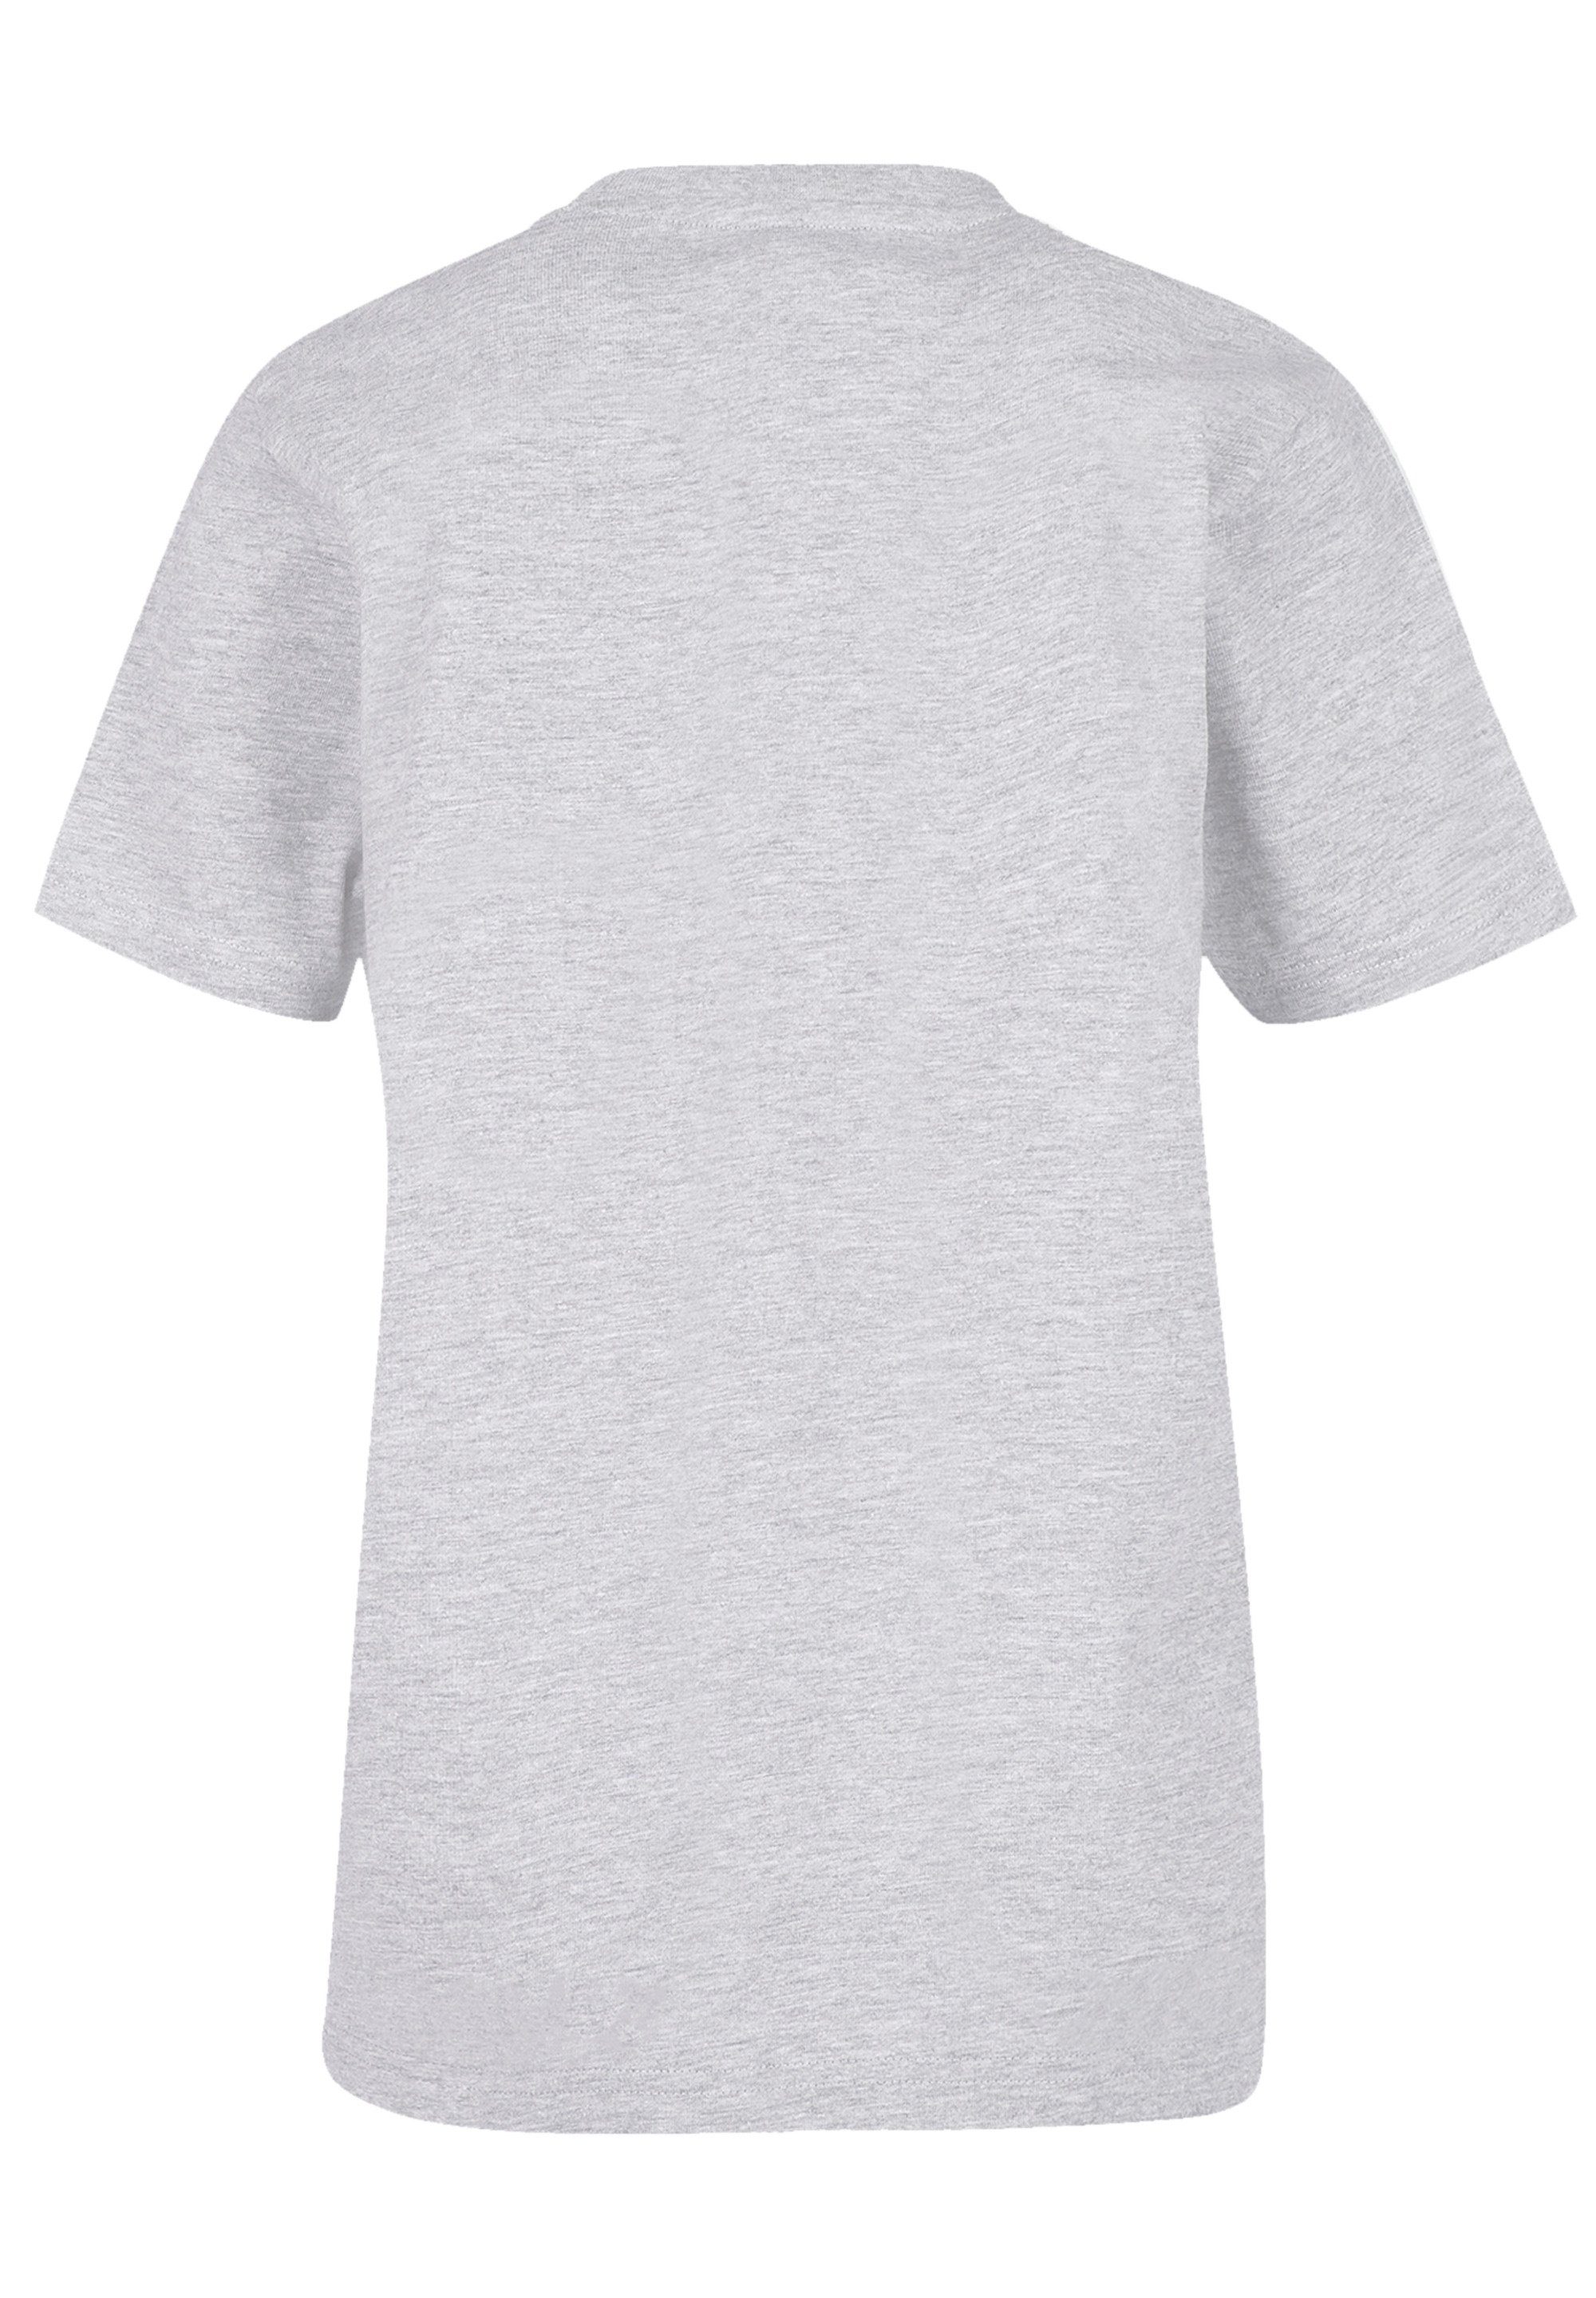 F4NT4STIC T-Shirt Tahiti grey heather Print